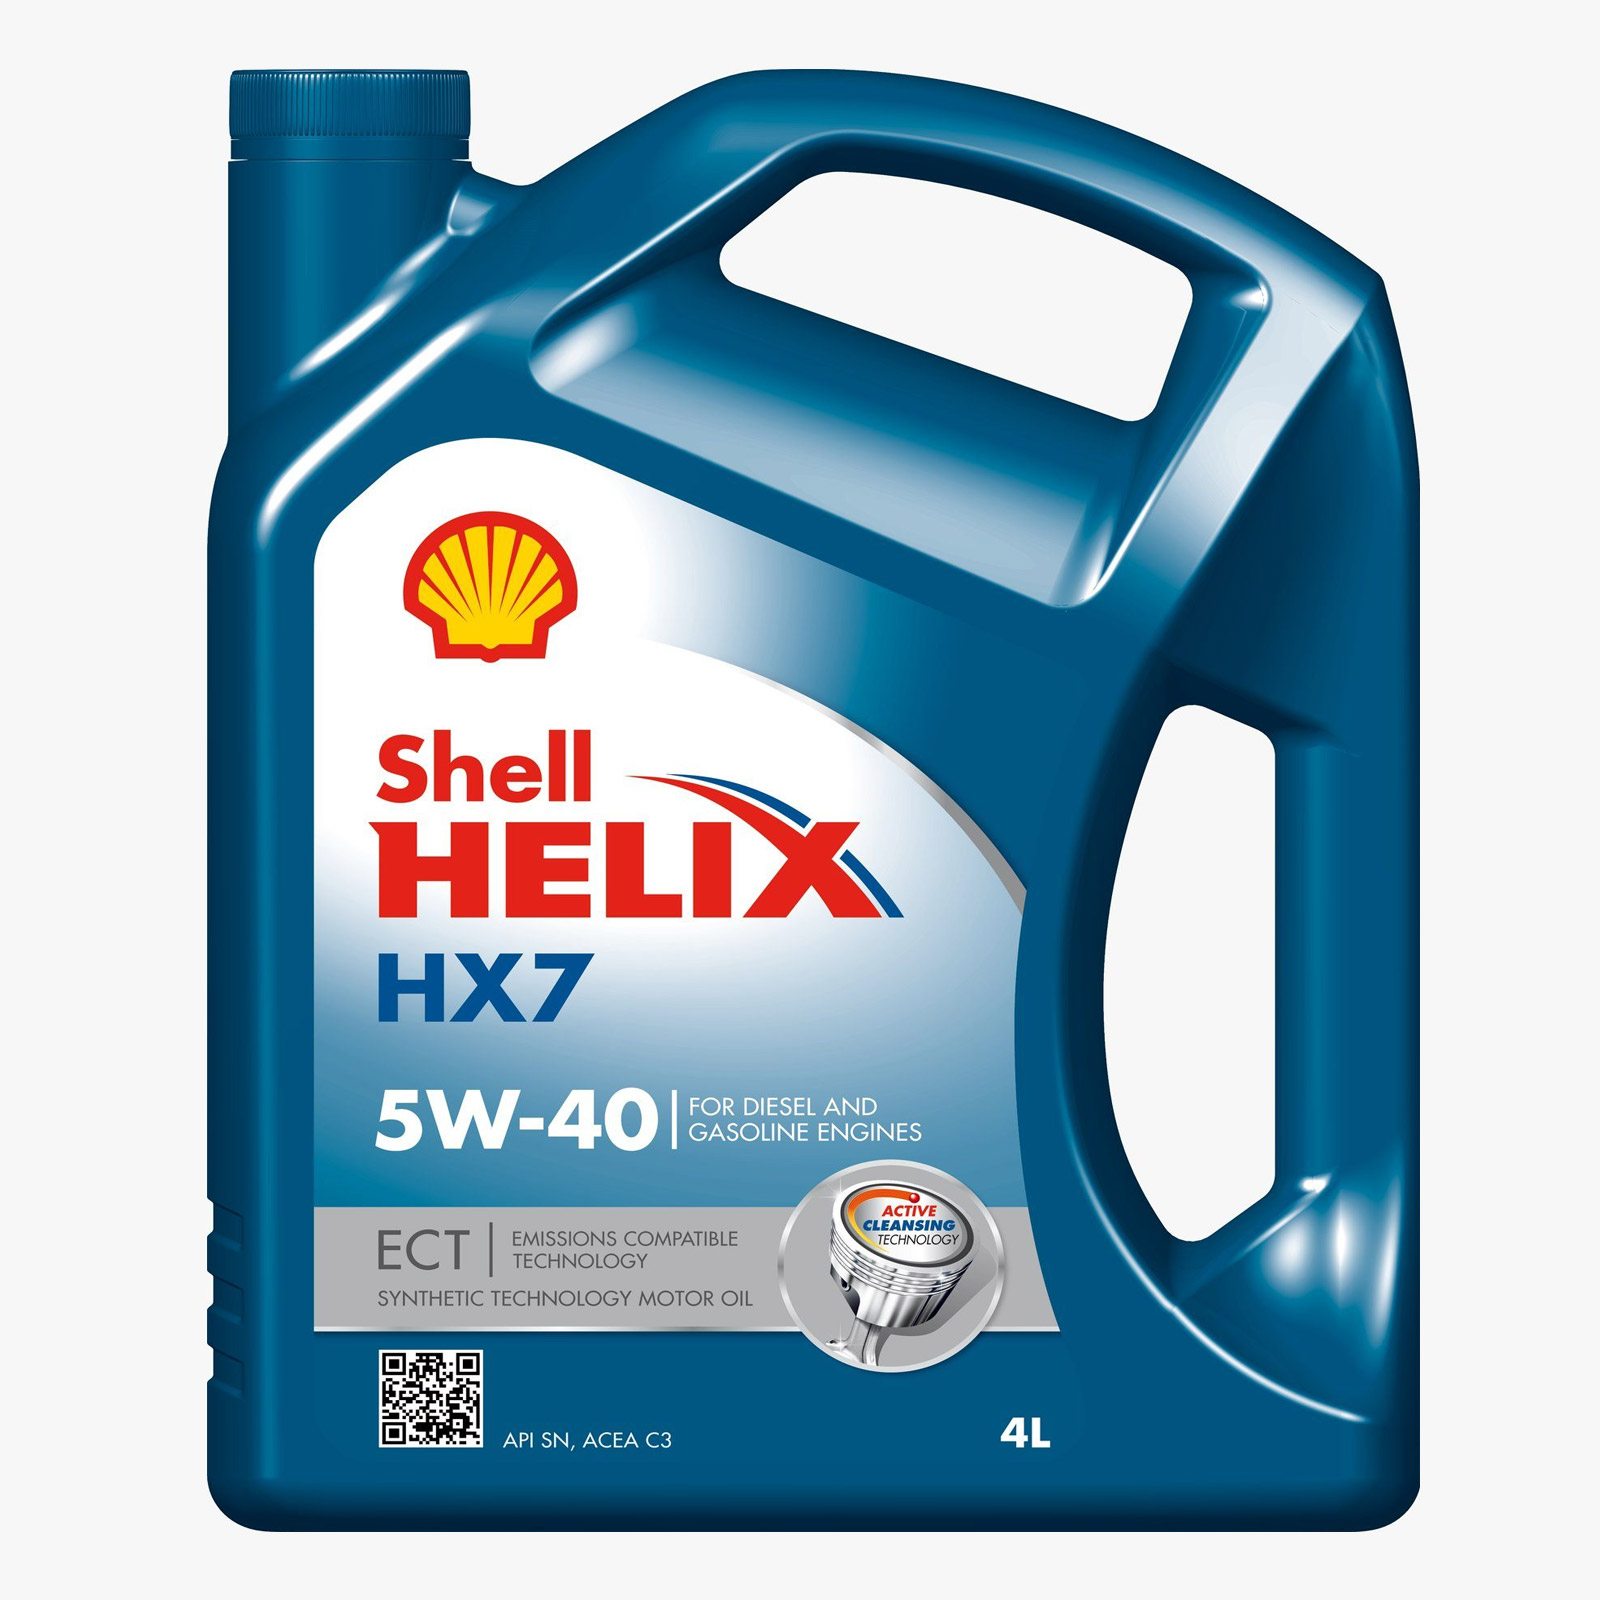 SHELL HELIX HX7 ECT 5W-40